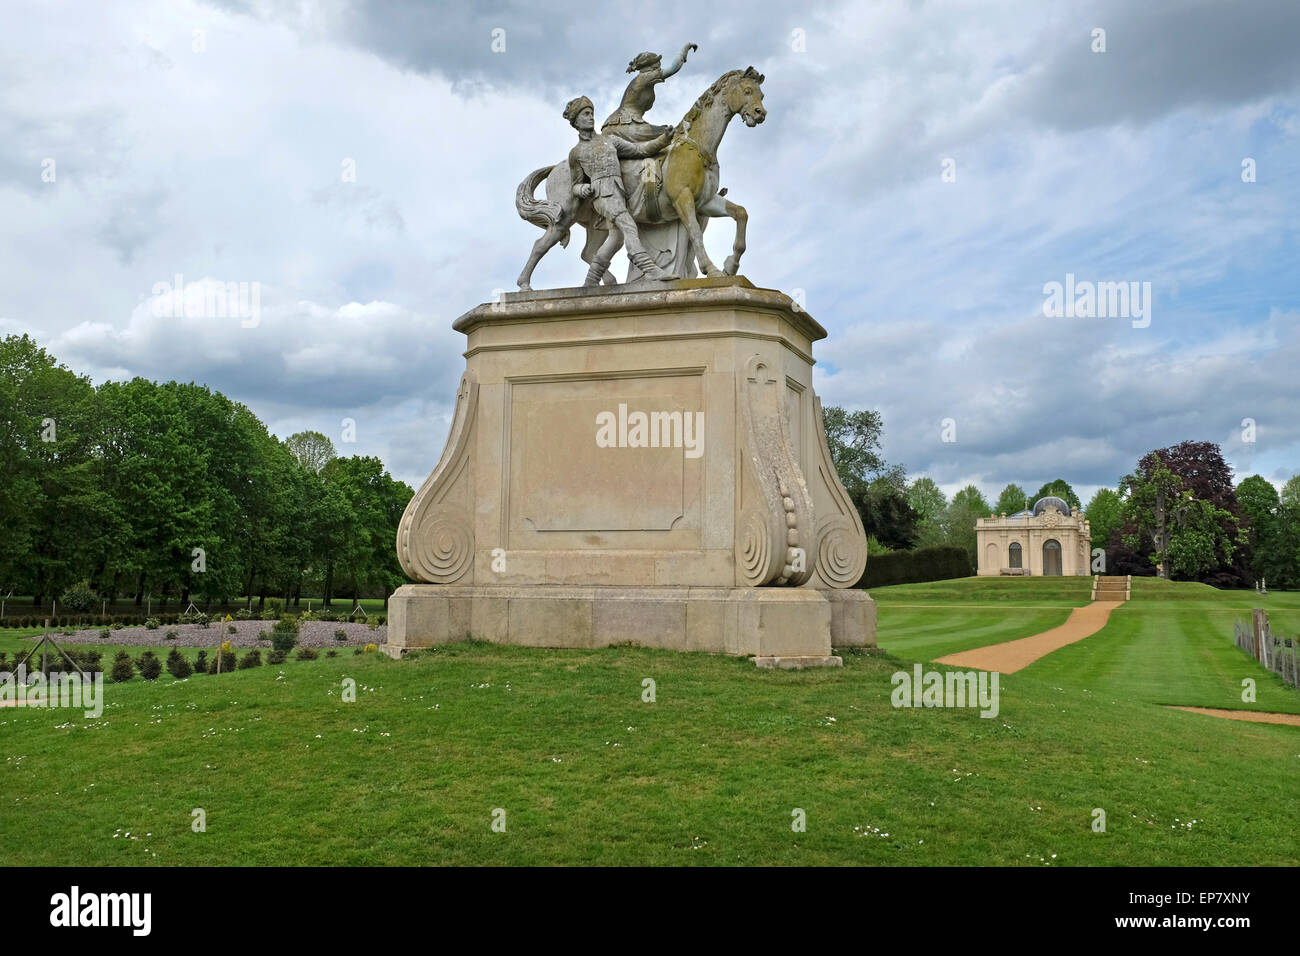 Statua a strappare Parco e giardini con l'Orangery in background. Silsoe, Luton, Bedfordshire, Regno Unito Foto Stock